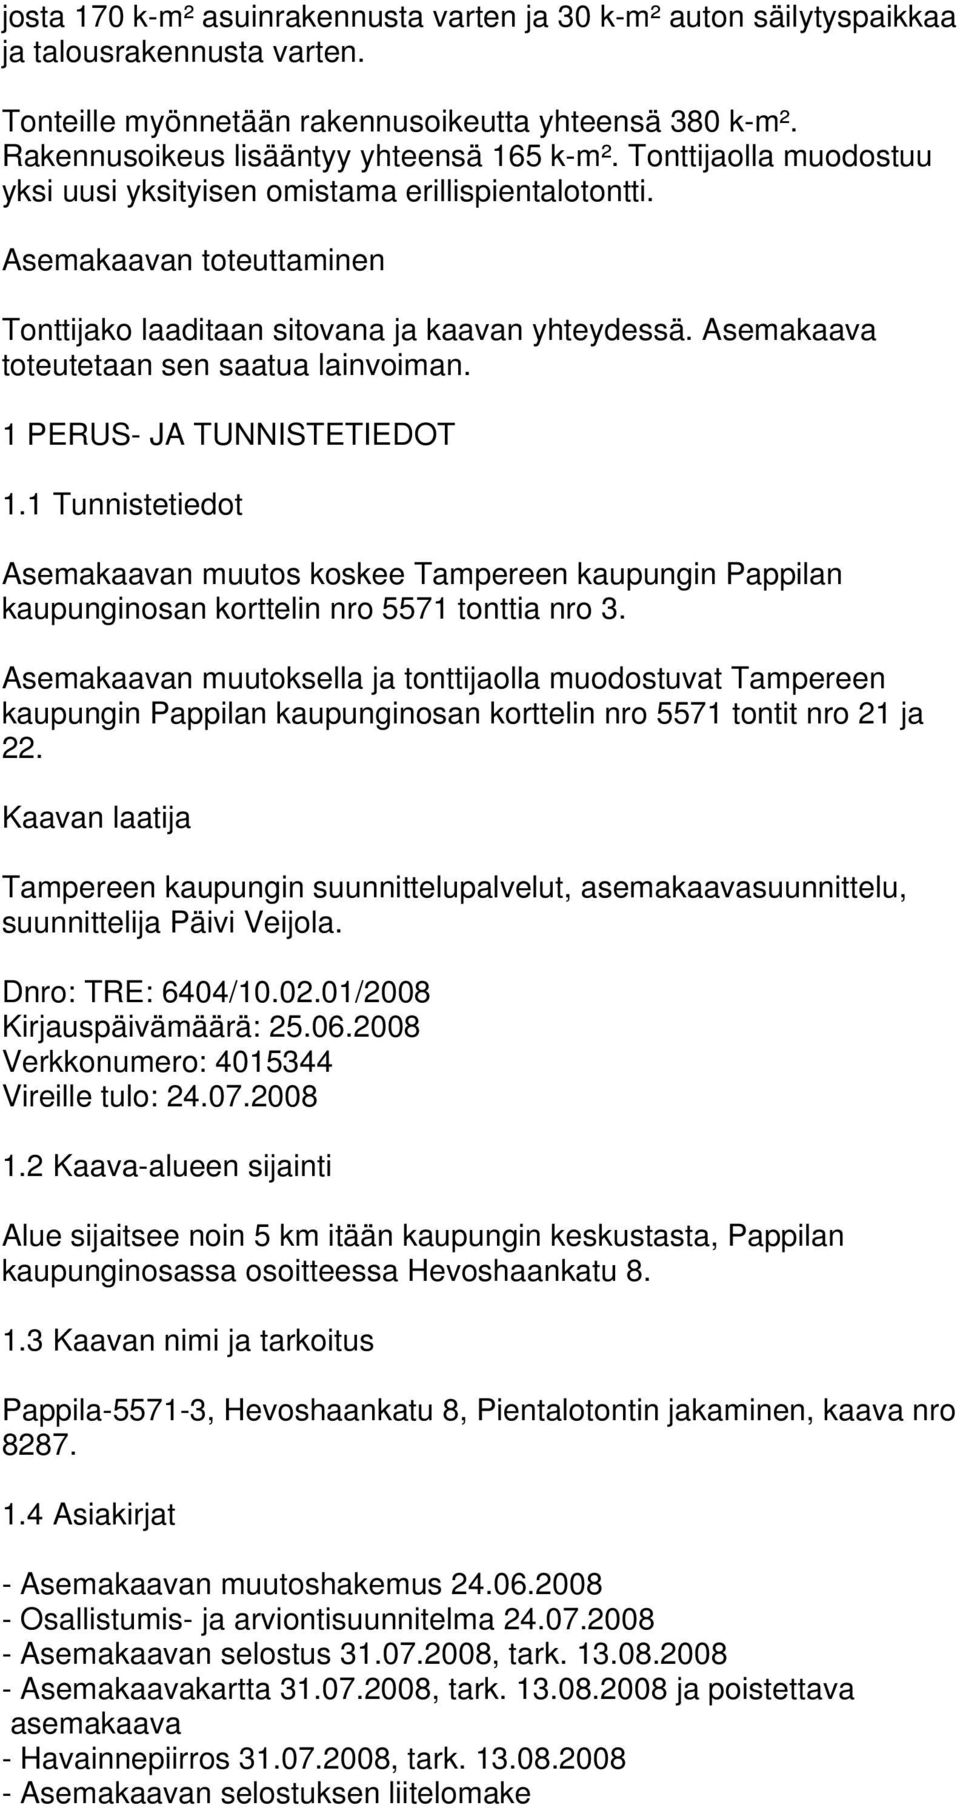 1 PERUS- JA TUNNISTETIEDOT 1.1 Tunnistetiedot Asemakaavan muutos koskee Tampereen kaupungin Pappilan kaupunginosan korttelin nro 5571 tonttia nro 3.